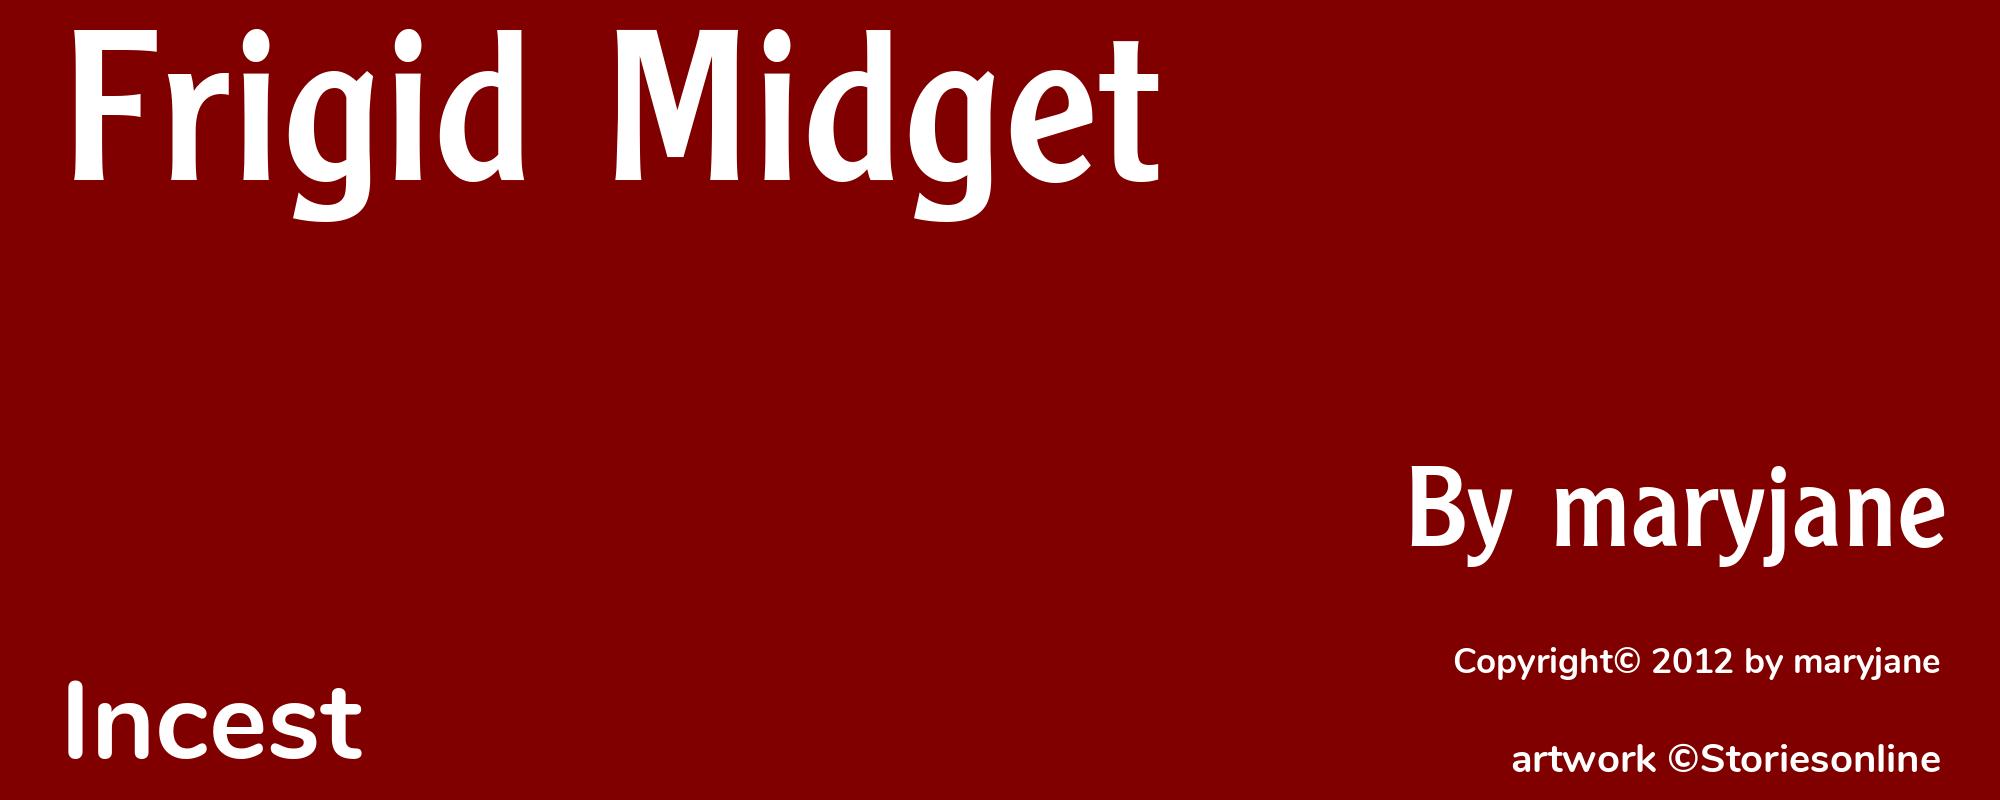 Frigid Midget - Cover